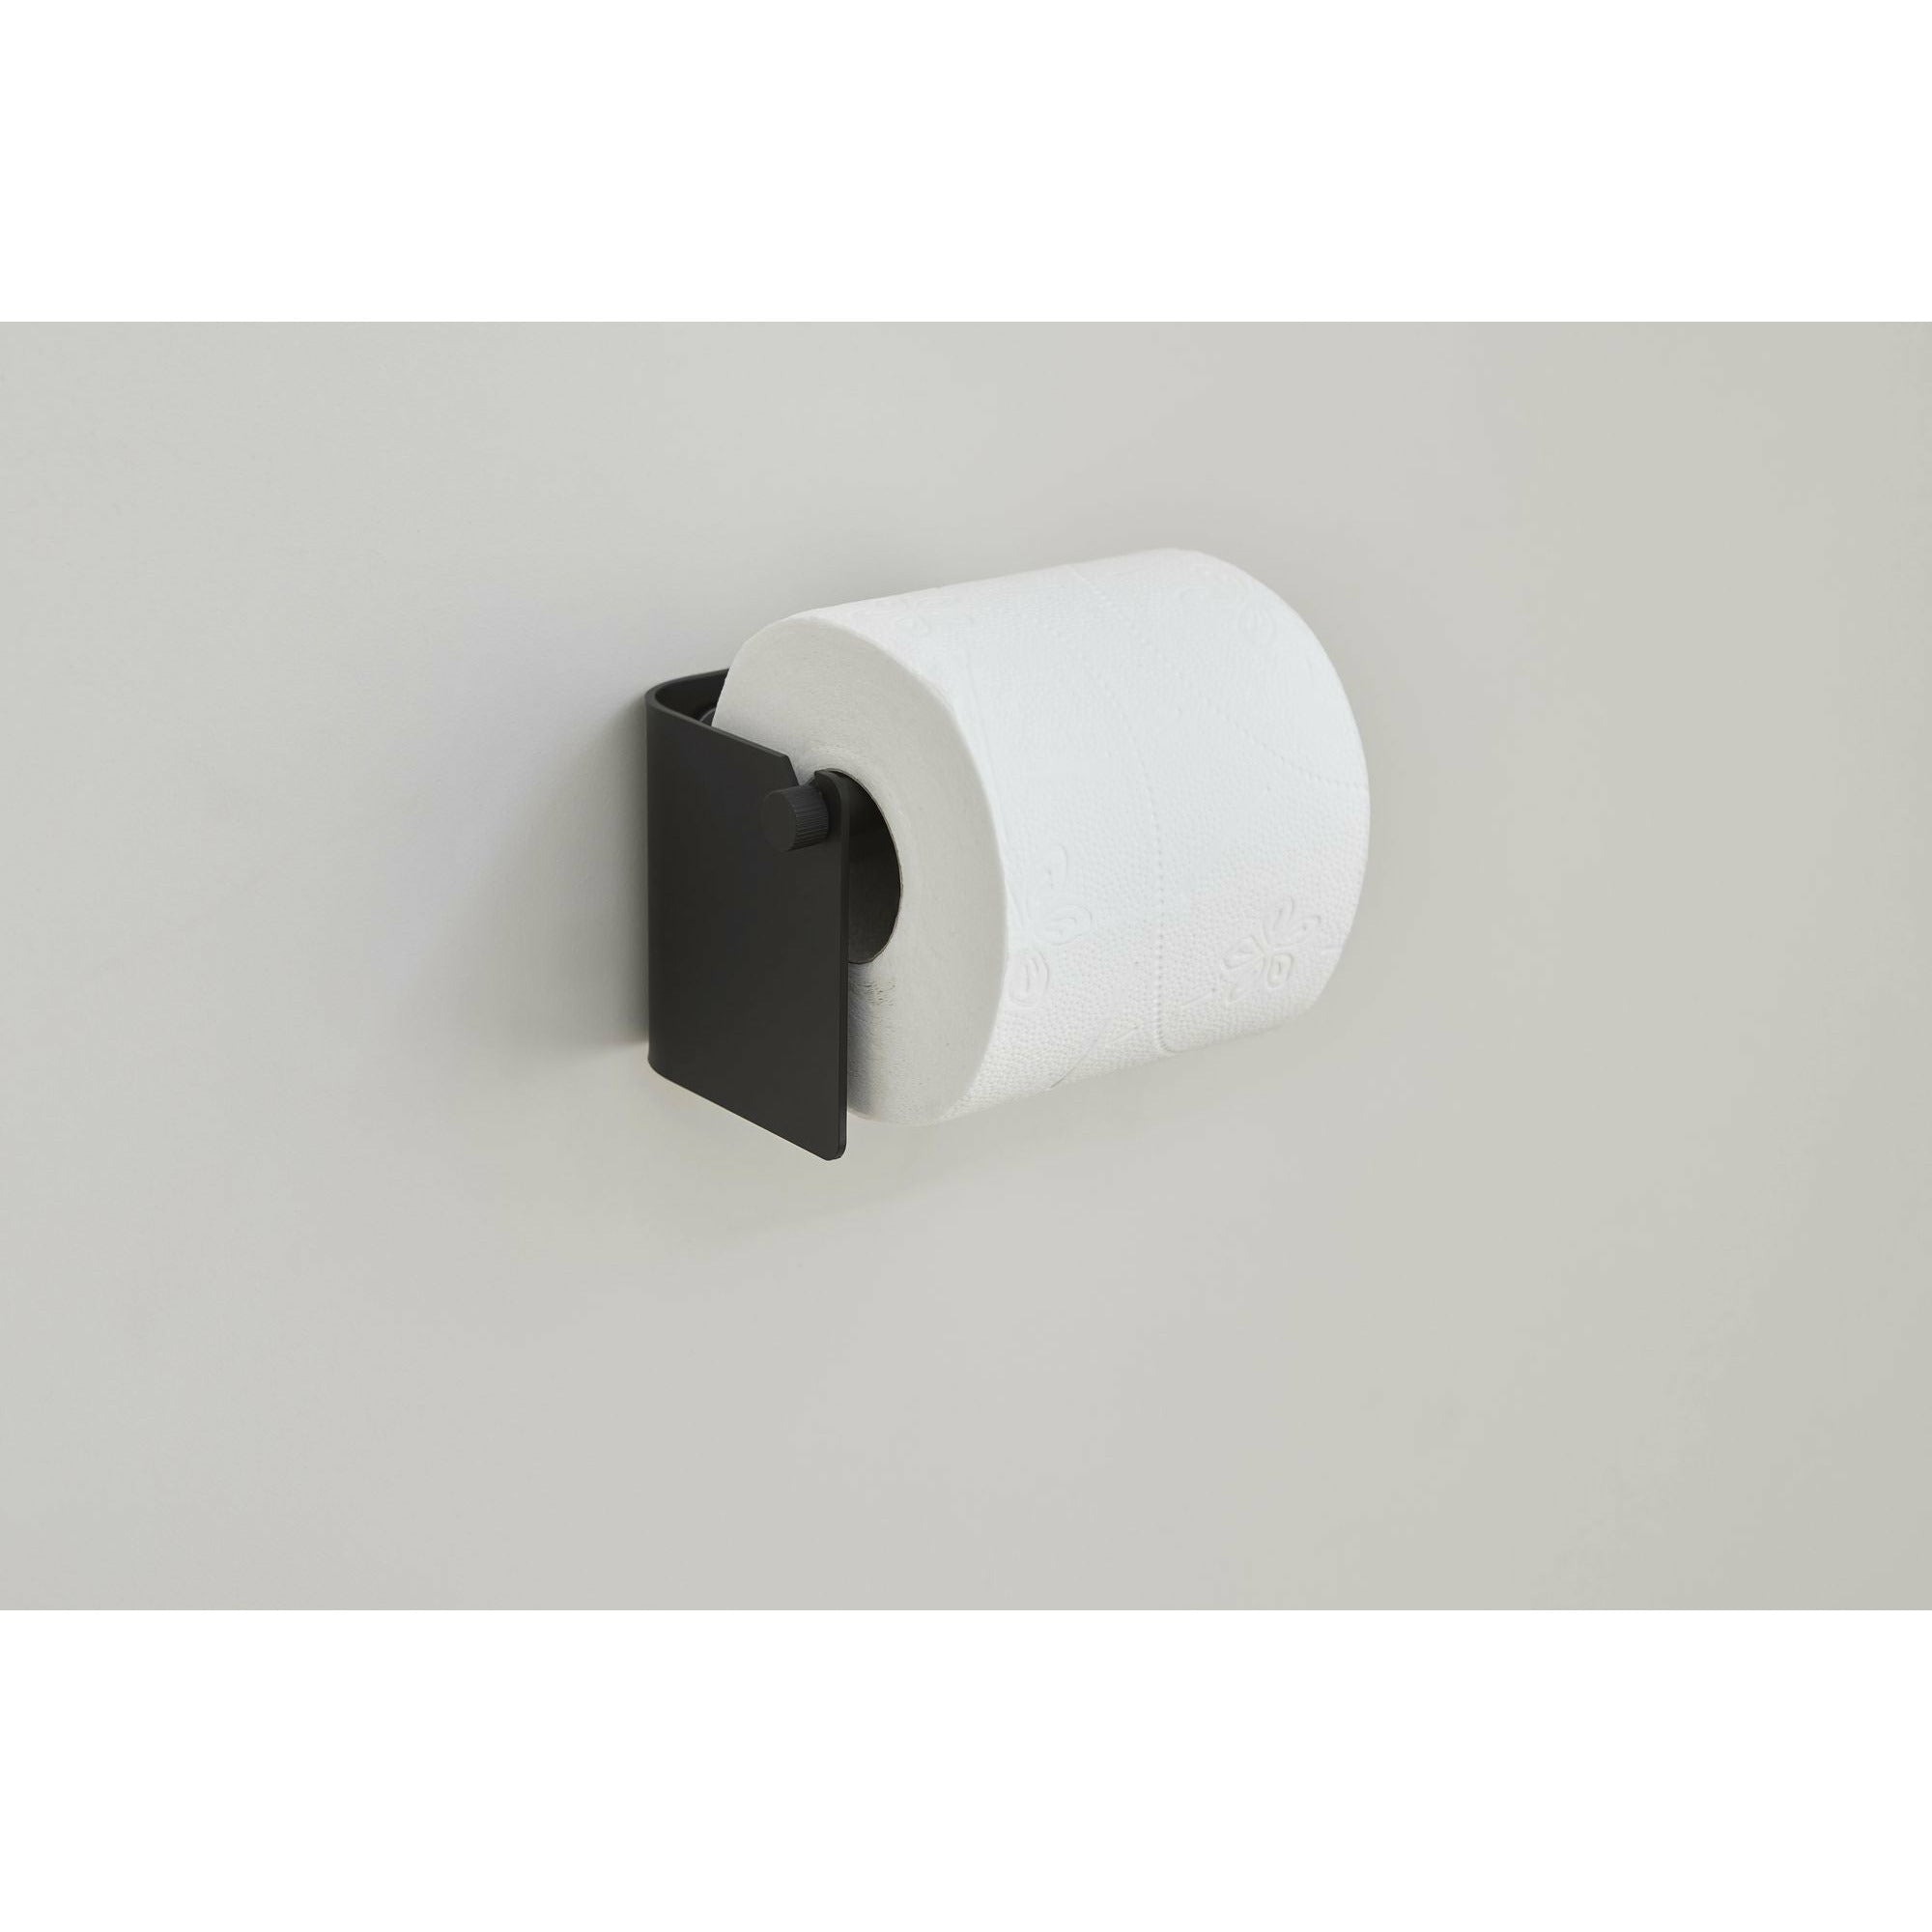 Form & Refine Boog toiletrol houder. Zwart staal